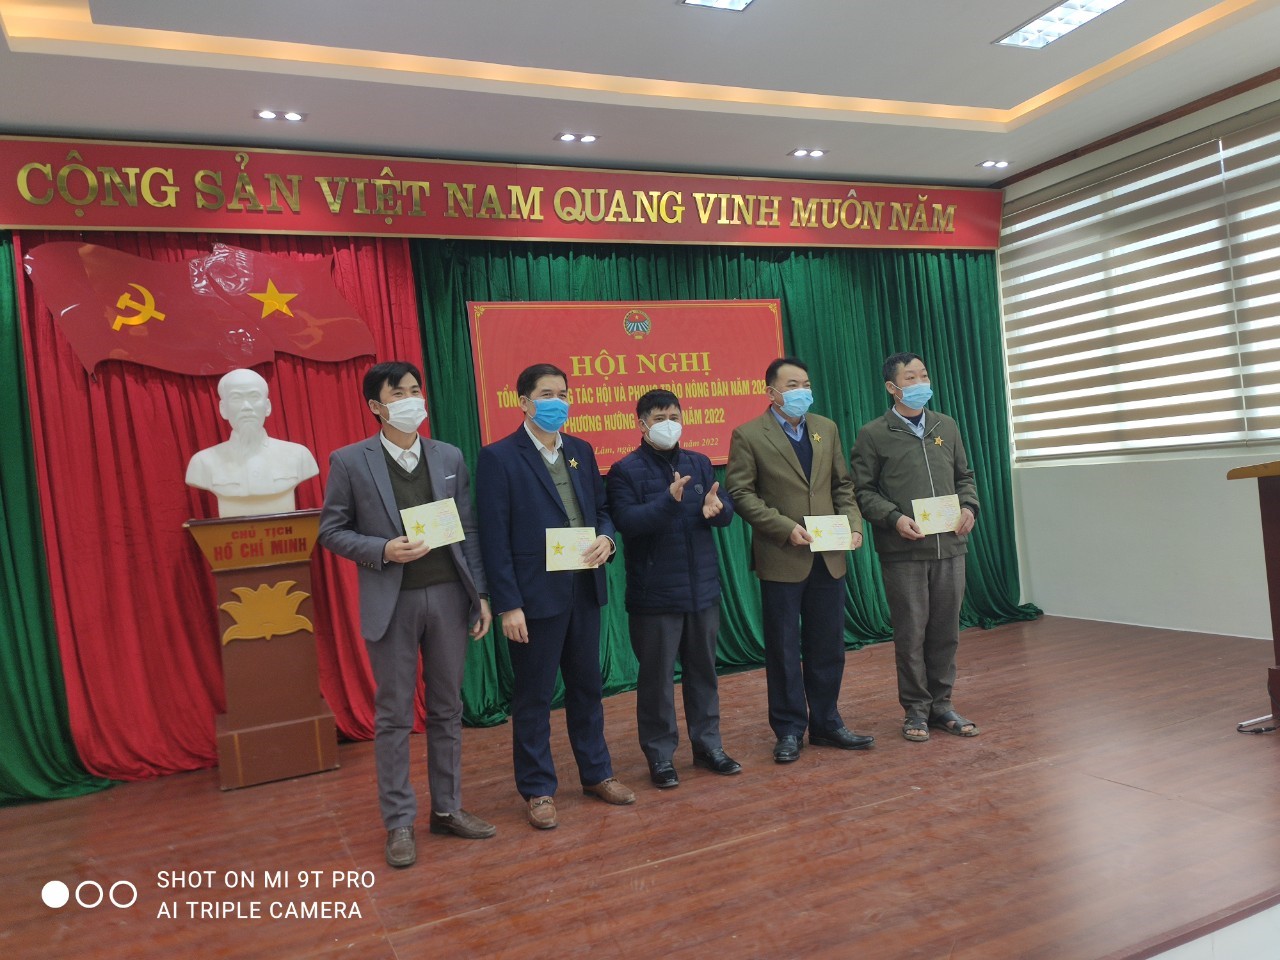 Đồng chí Hoàng Nông Chức, Chủ tịch HND huyện trao kỷ niệm chương Vì giai cấp nông dân cho các đại biểu